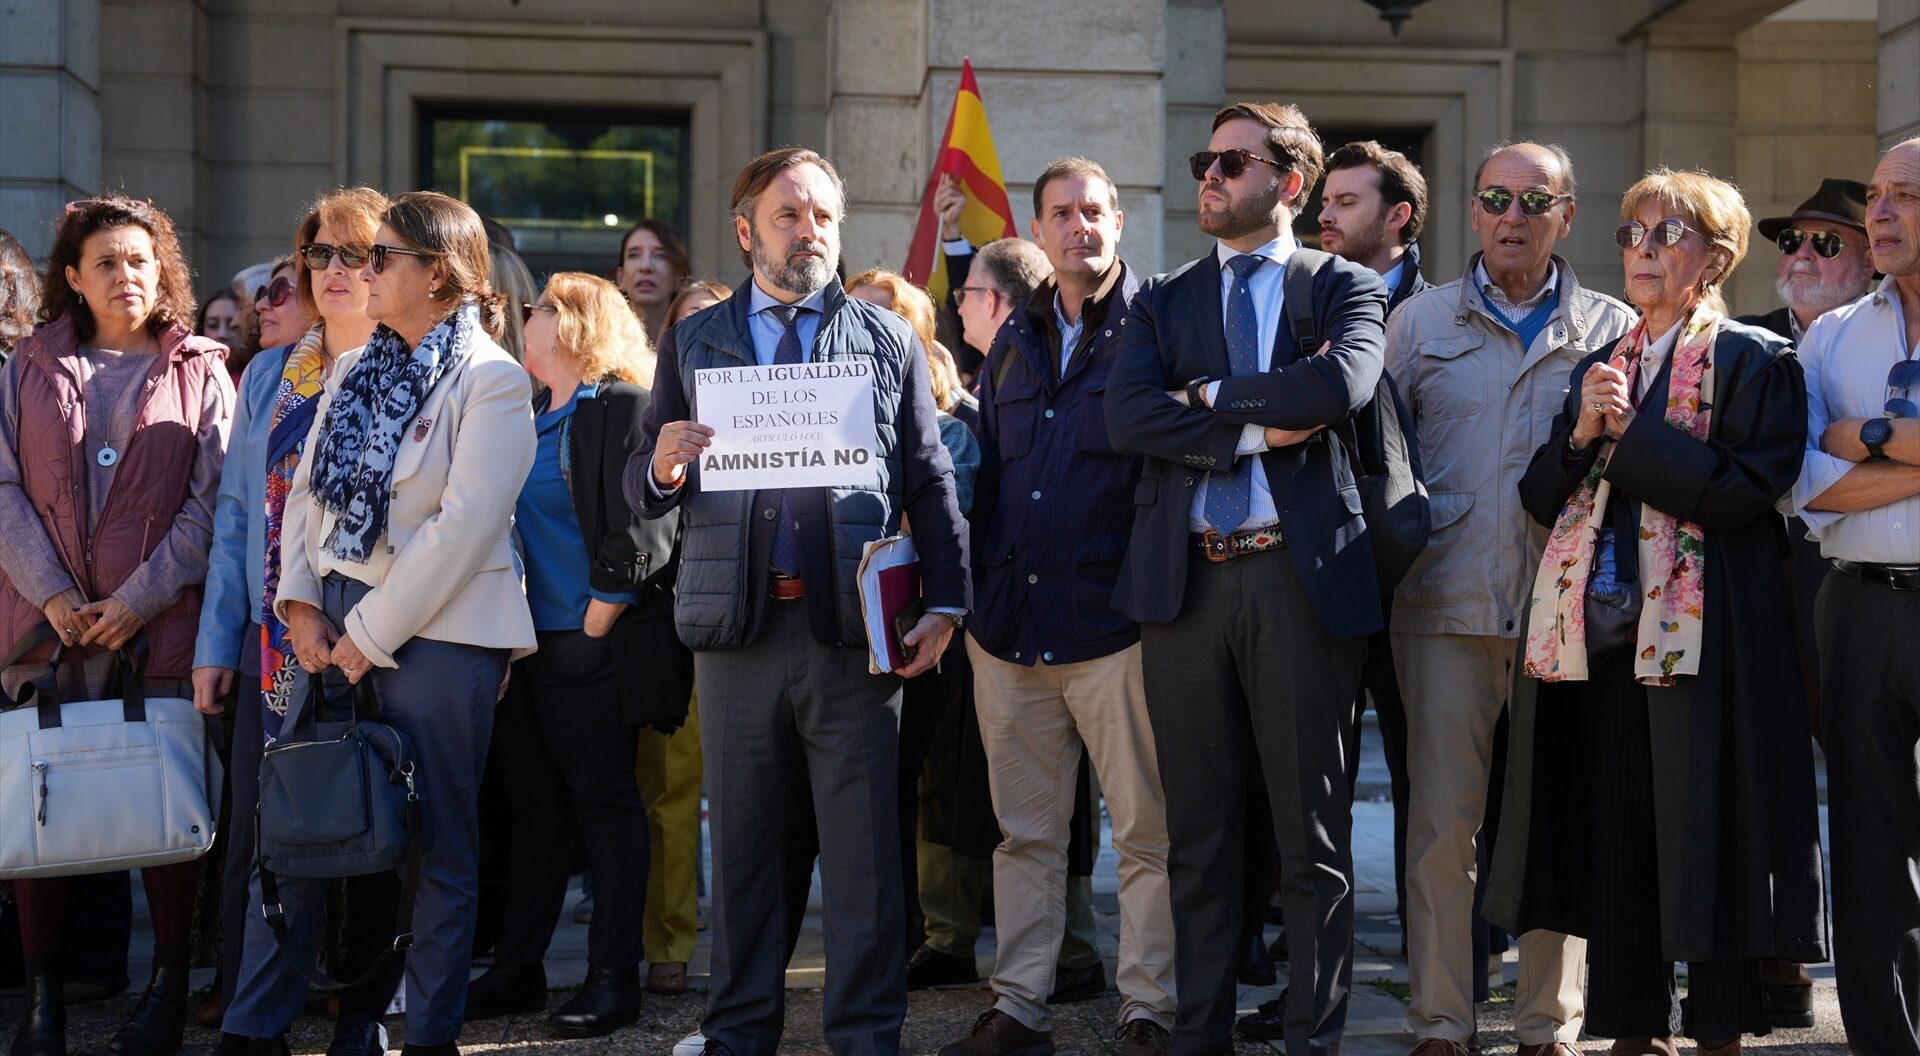 El juez decano de Sevilla convoca a magistrados y jueces a manifestarse contra la amnistía y contra el “laufare”